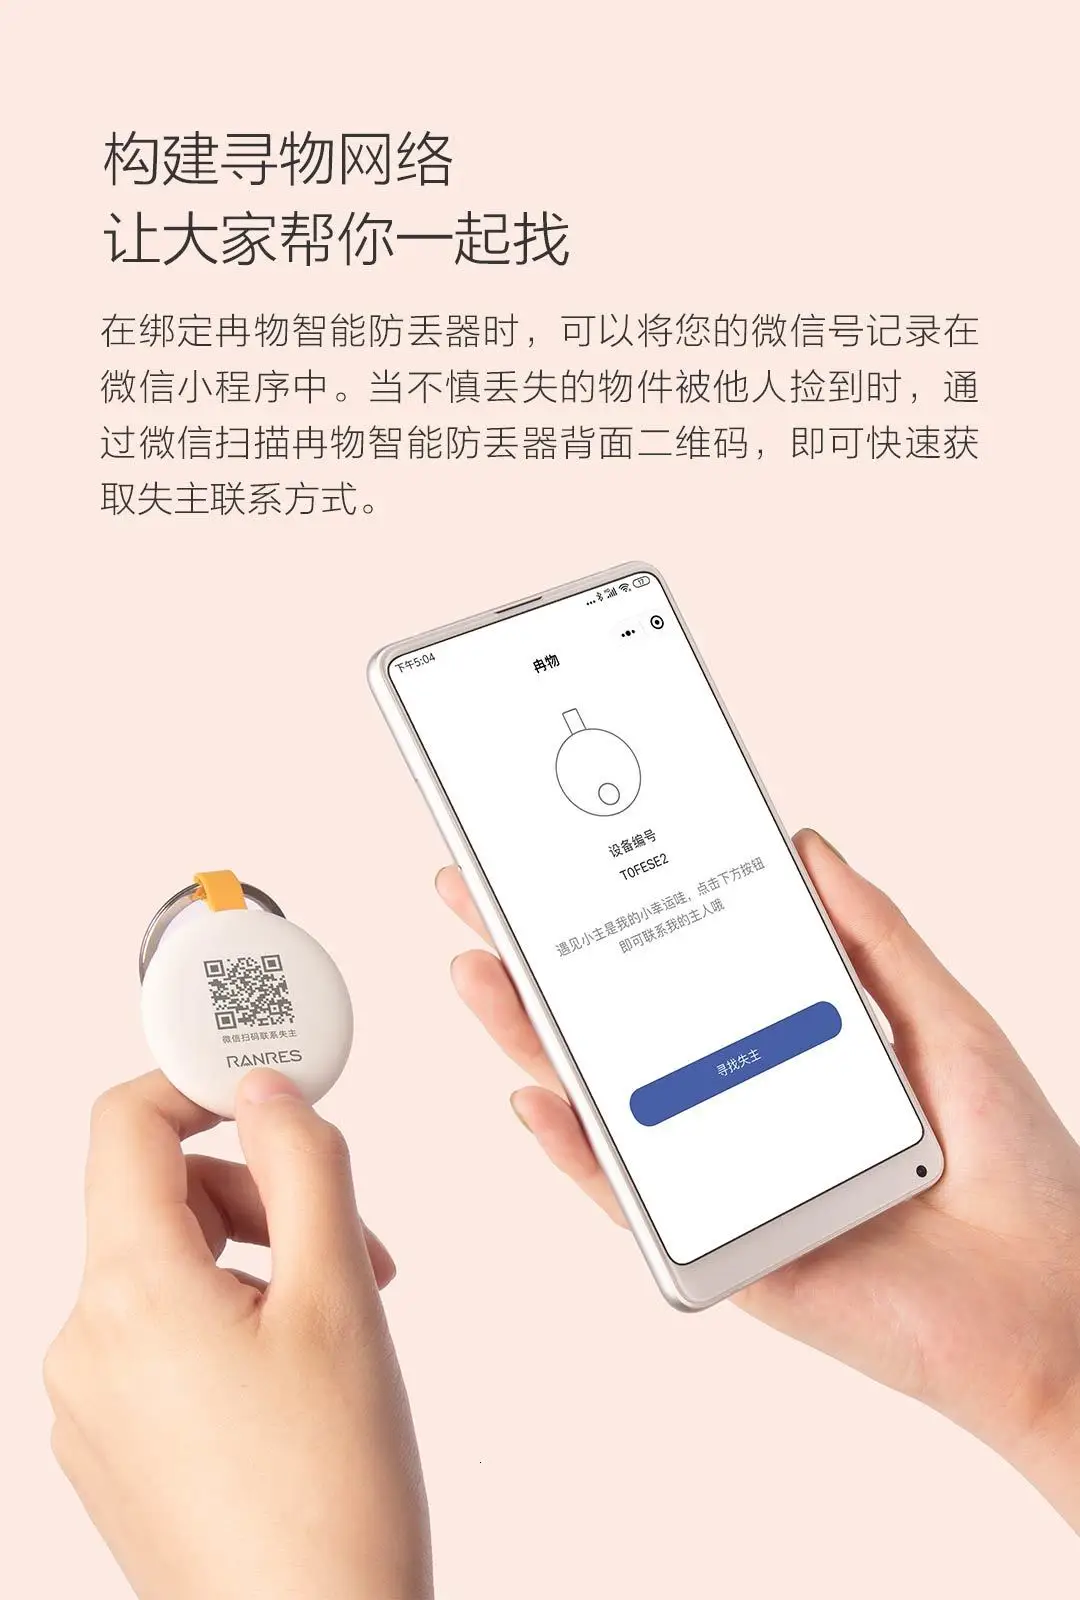 Xiaomi Smart утерянное устройство Интеллектуальная защита Lost Youth Edition Xiomi Lost Reminder двунаправленный поиск ключа